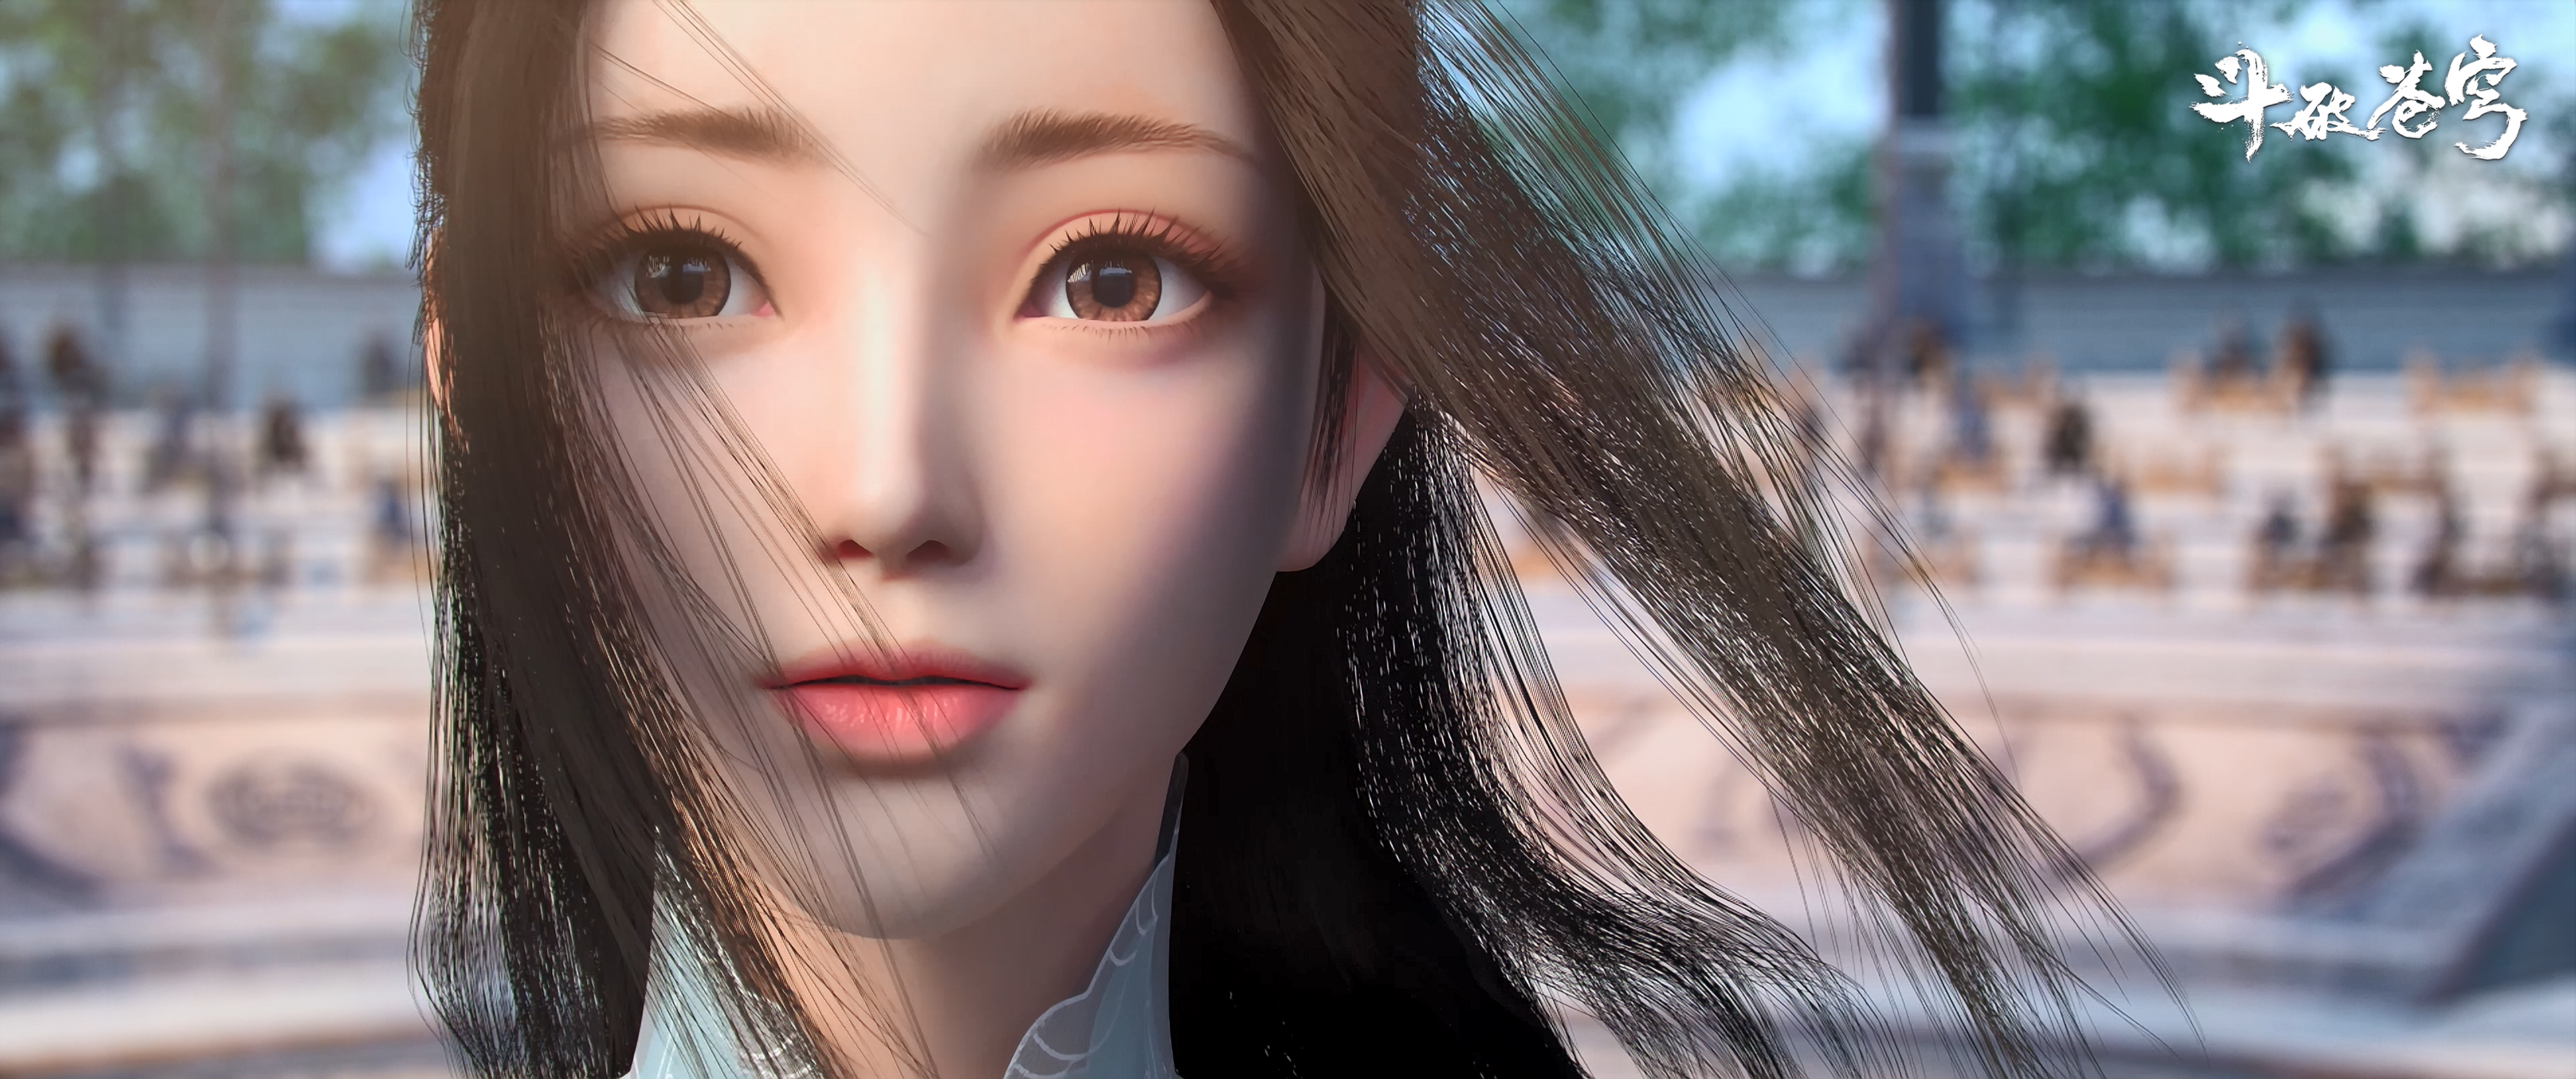 Battle Through The Heavens Dou Po Cang Qiong Xiao Xun Er Asian Women Long Hair Looking At Viewer CGi 3840x1608